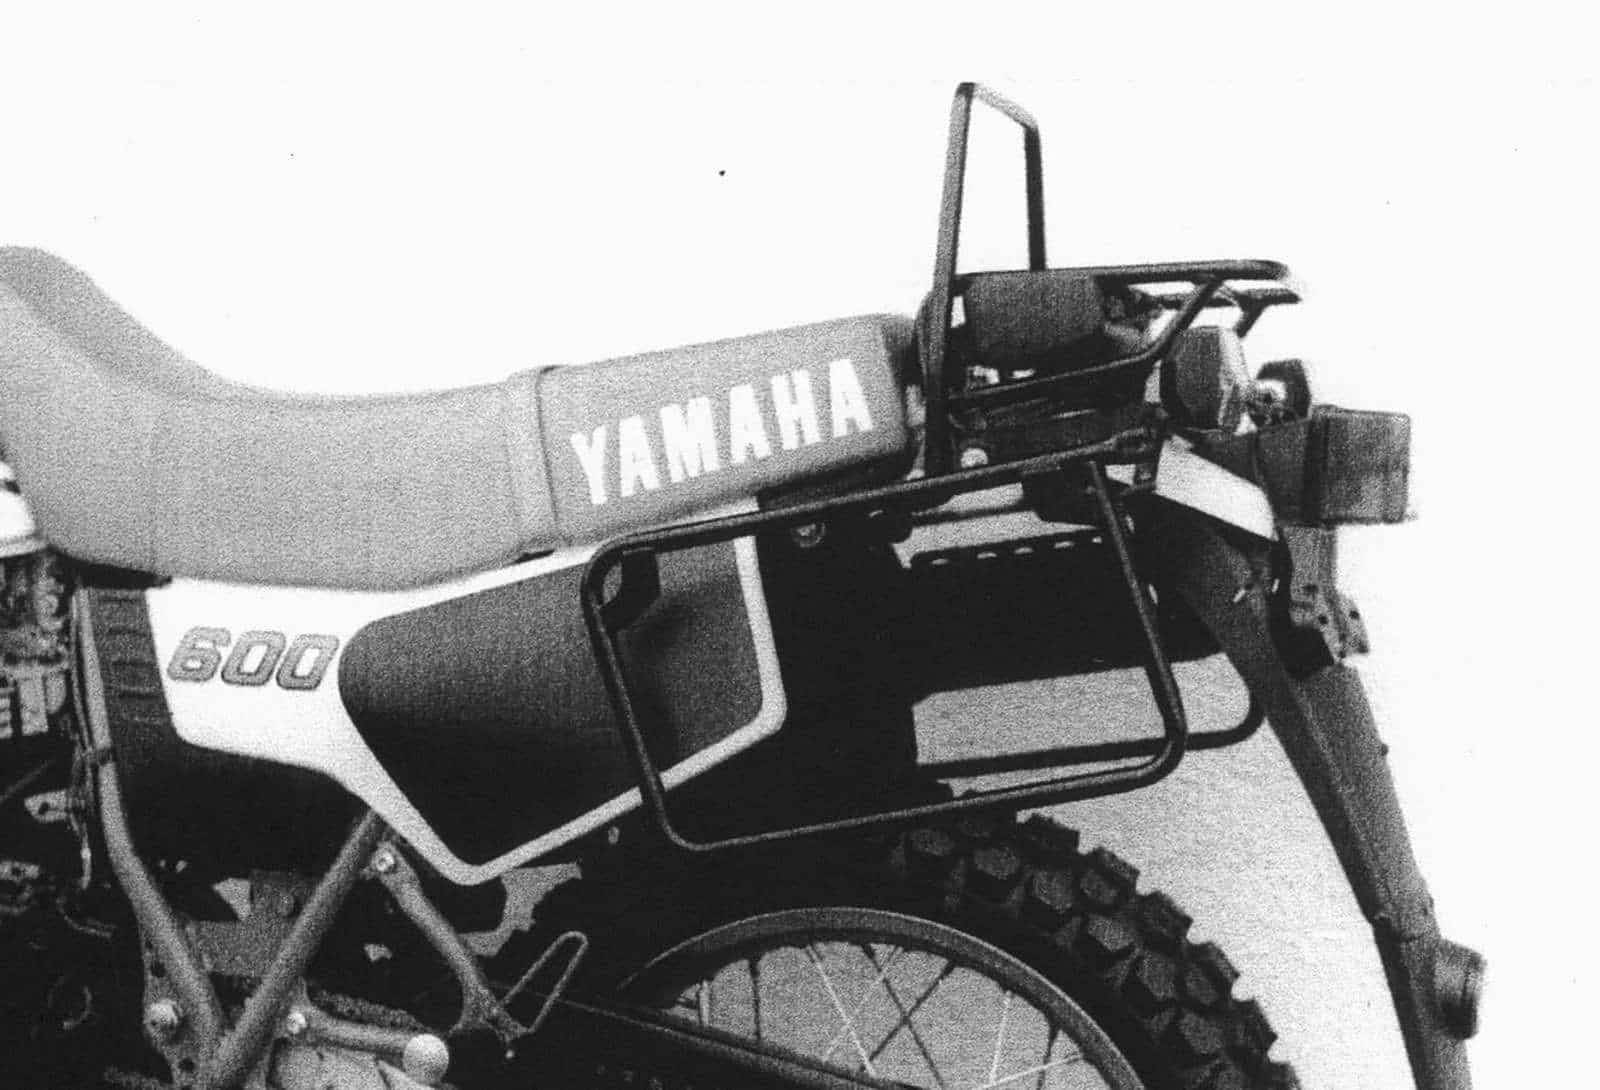 YAMAHA XT600Z PAIR OF QUALITY BACK INDICATORS NEW 1984-1986 